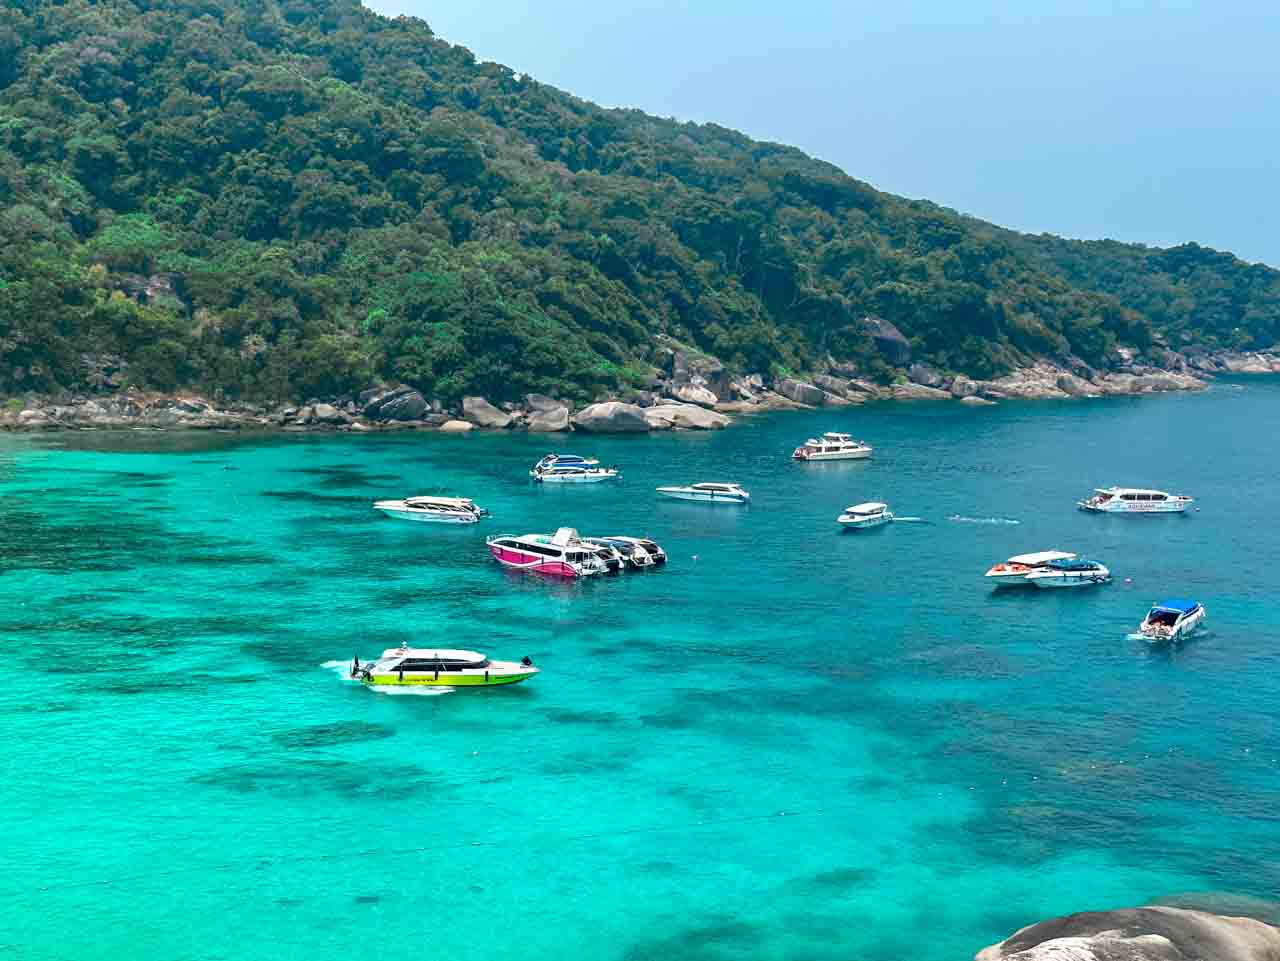 Similan Islands em Phuket - escolher a época certa para decidir entre Phuket ou Koh Samui, faz muita diferença.